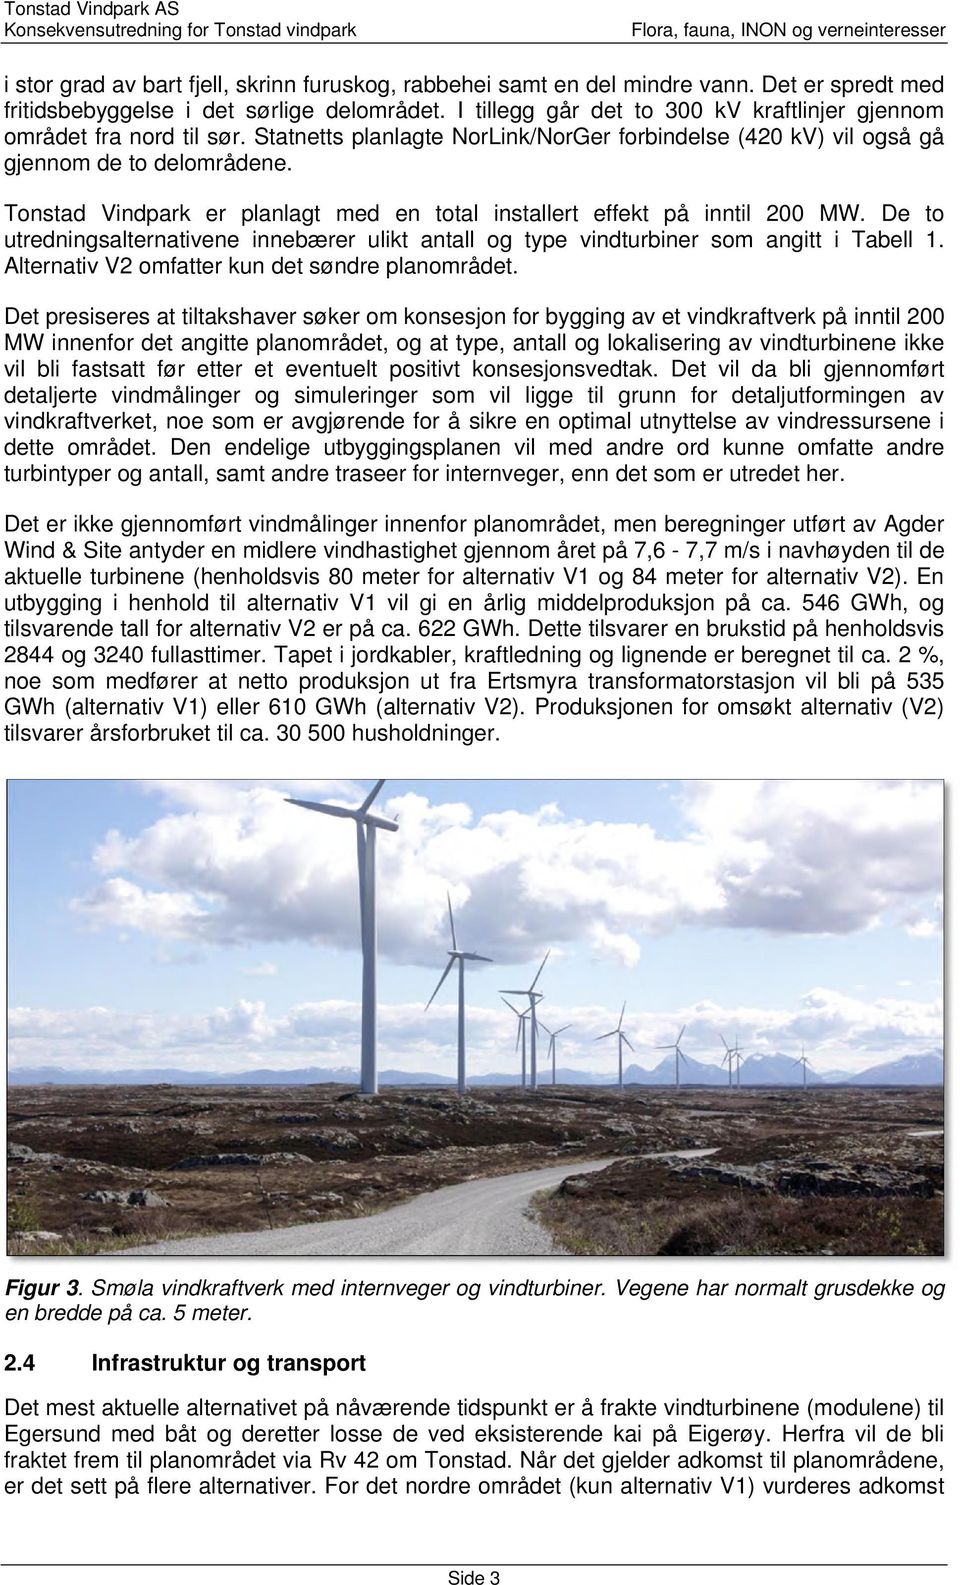 Tonstad Vindpark er planlagt med en total installert effekt på inntil 200 MW. De to utredningsalternativene innebærer ulikt antall og type vindturbiner som angitt i Tabell 1.